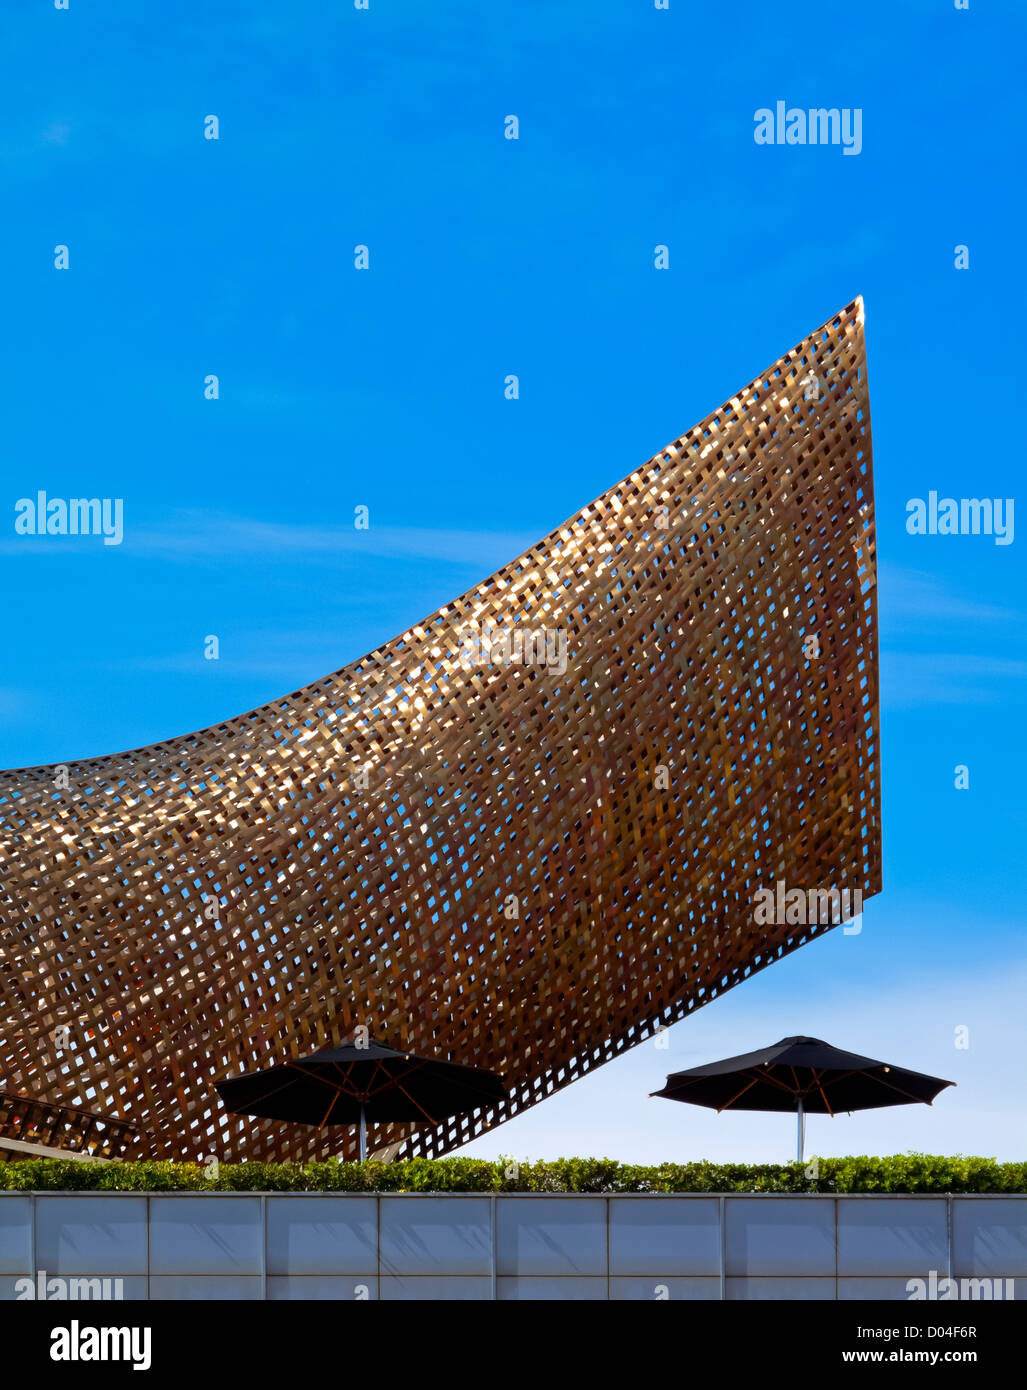 Détail de la sculpture de poisson par Frank Gehry à Barceloneta Port Olimpic Barcelona La Catalogne Espagne construit pour les Jeux Olympiques de 1992 Banque D'Images